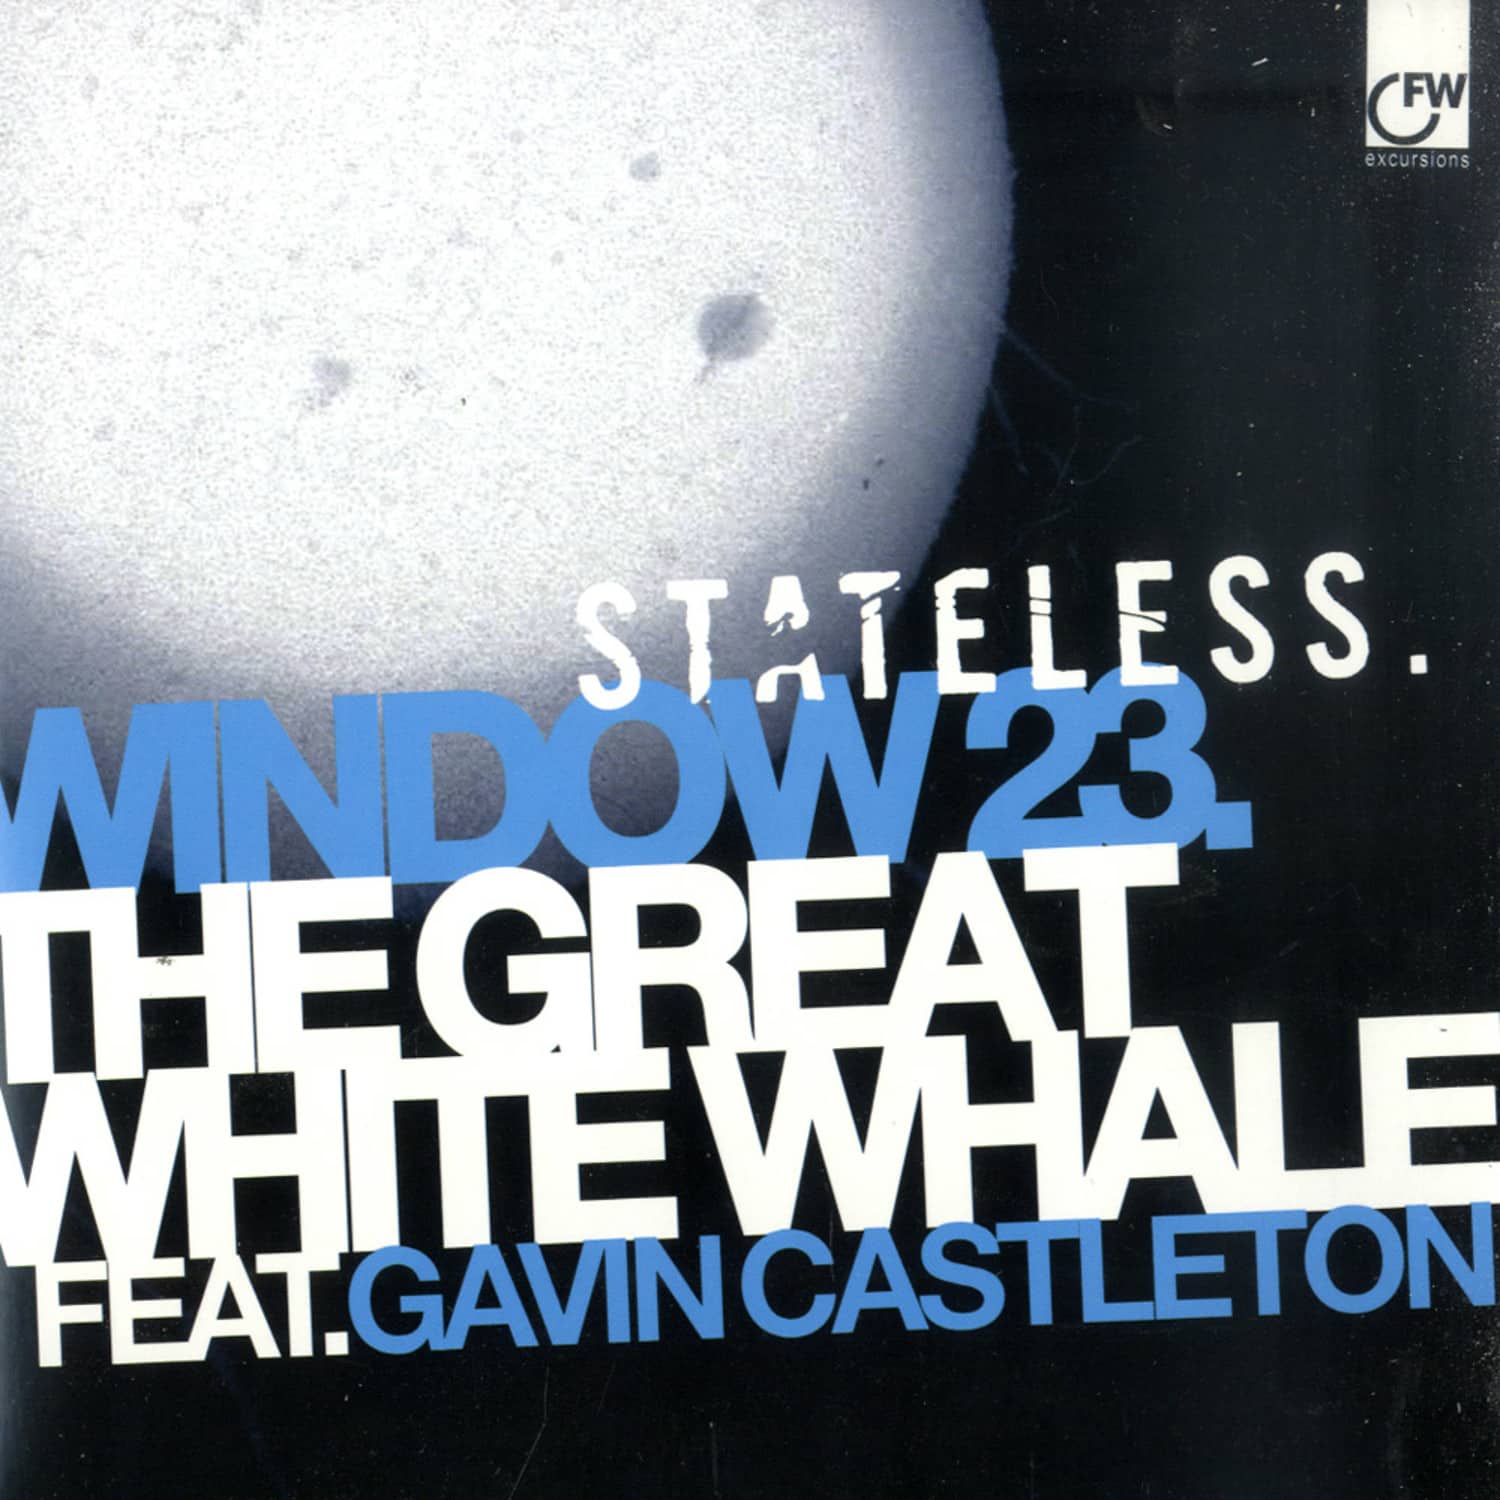 Stateless - WINDOW 23 